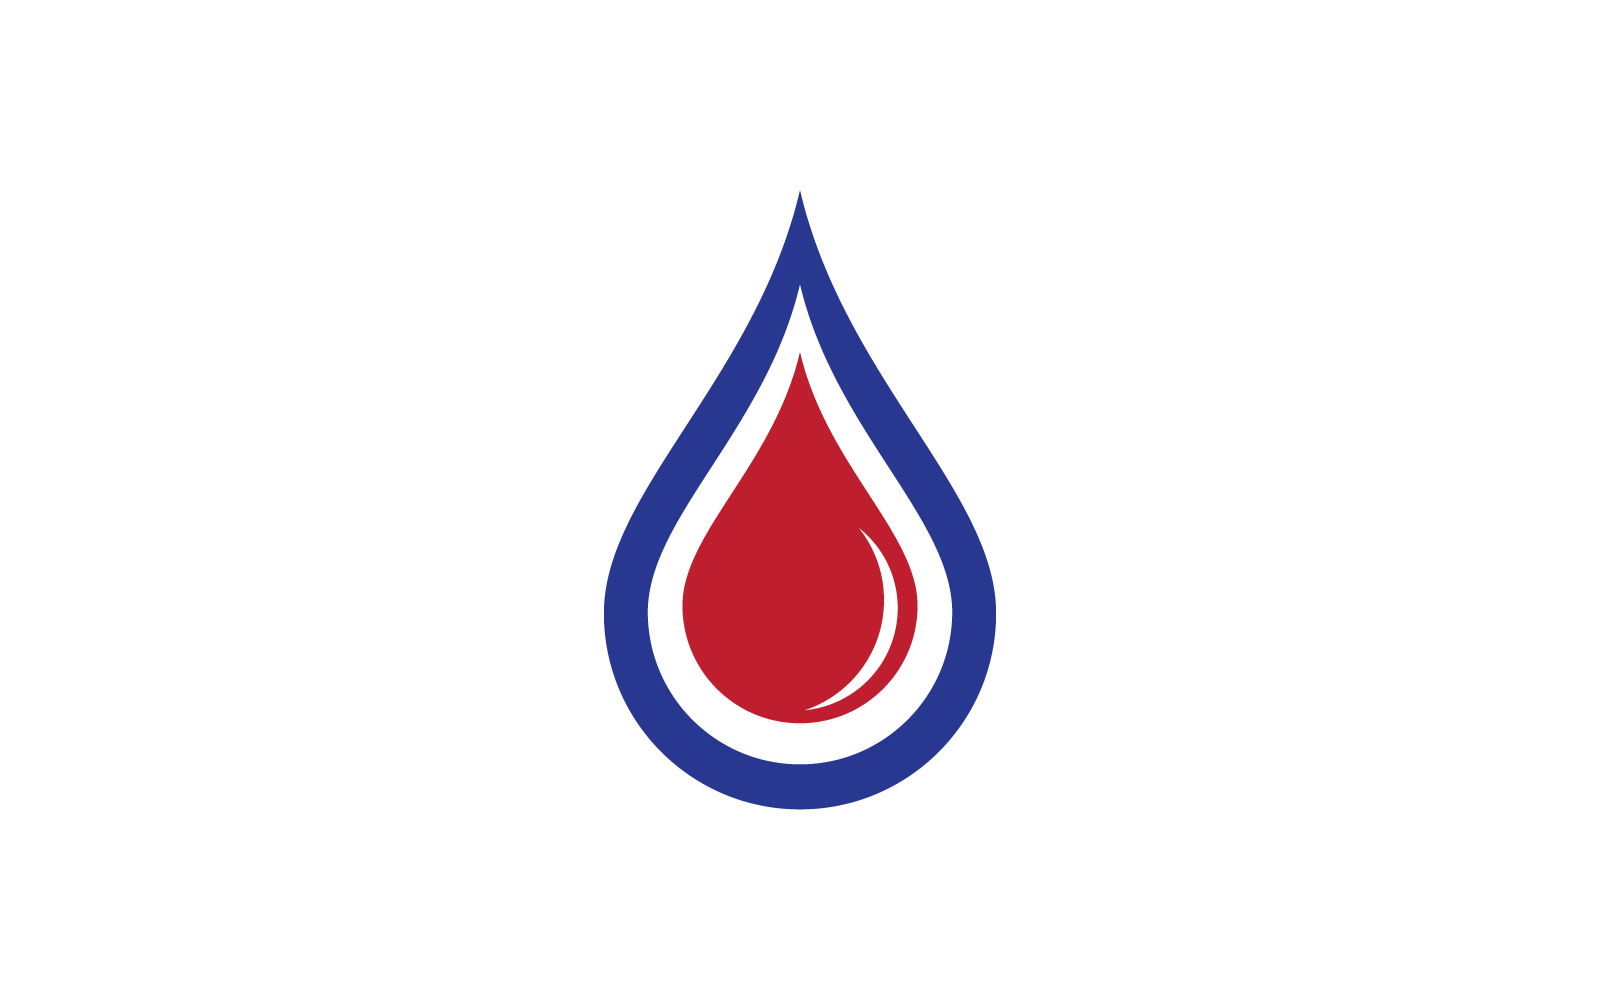 Fire flame Logo vector, Oil, gas and energy logo concept Logo Template